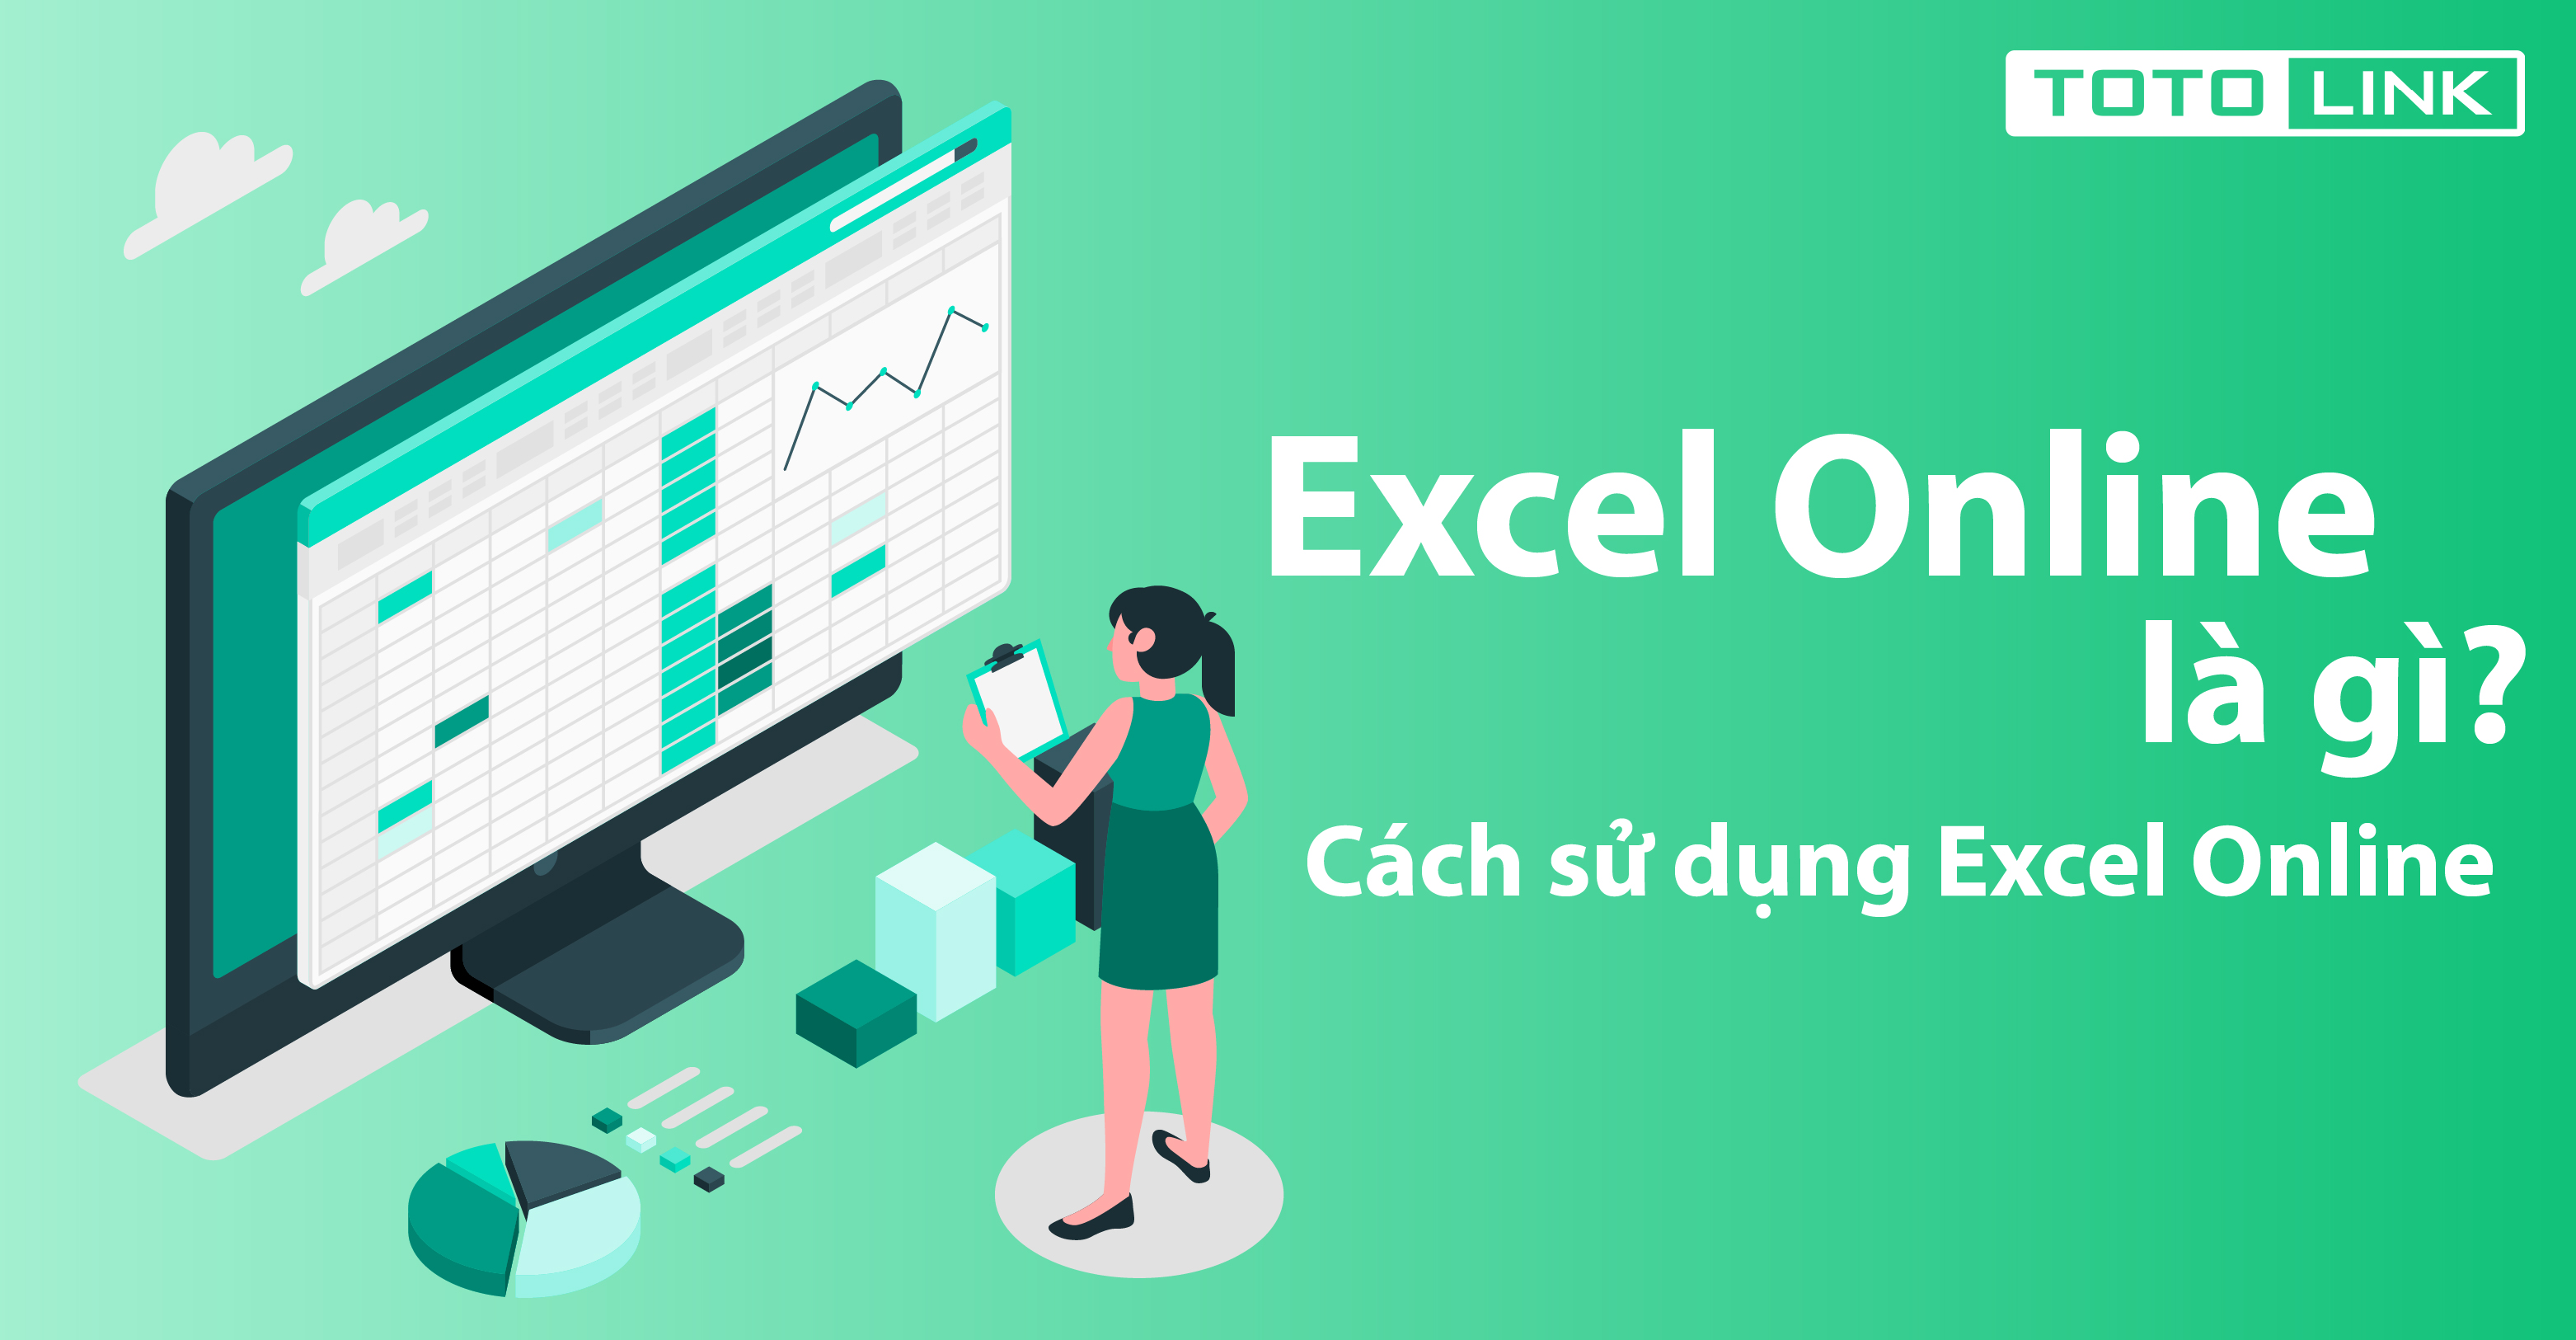 Excel online là gì? Cách sử dụng excel online đơn giản và miễn phí - TOTOLINK Việt Nam